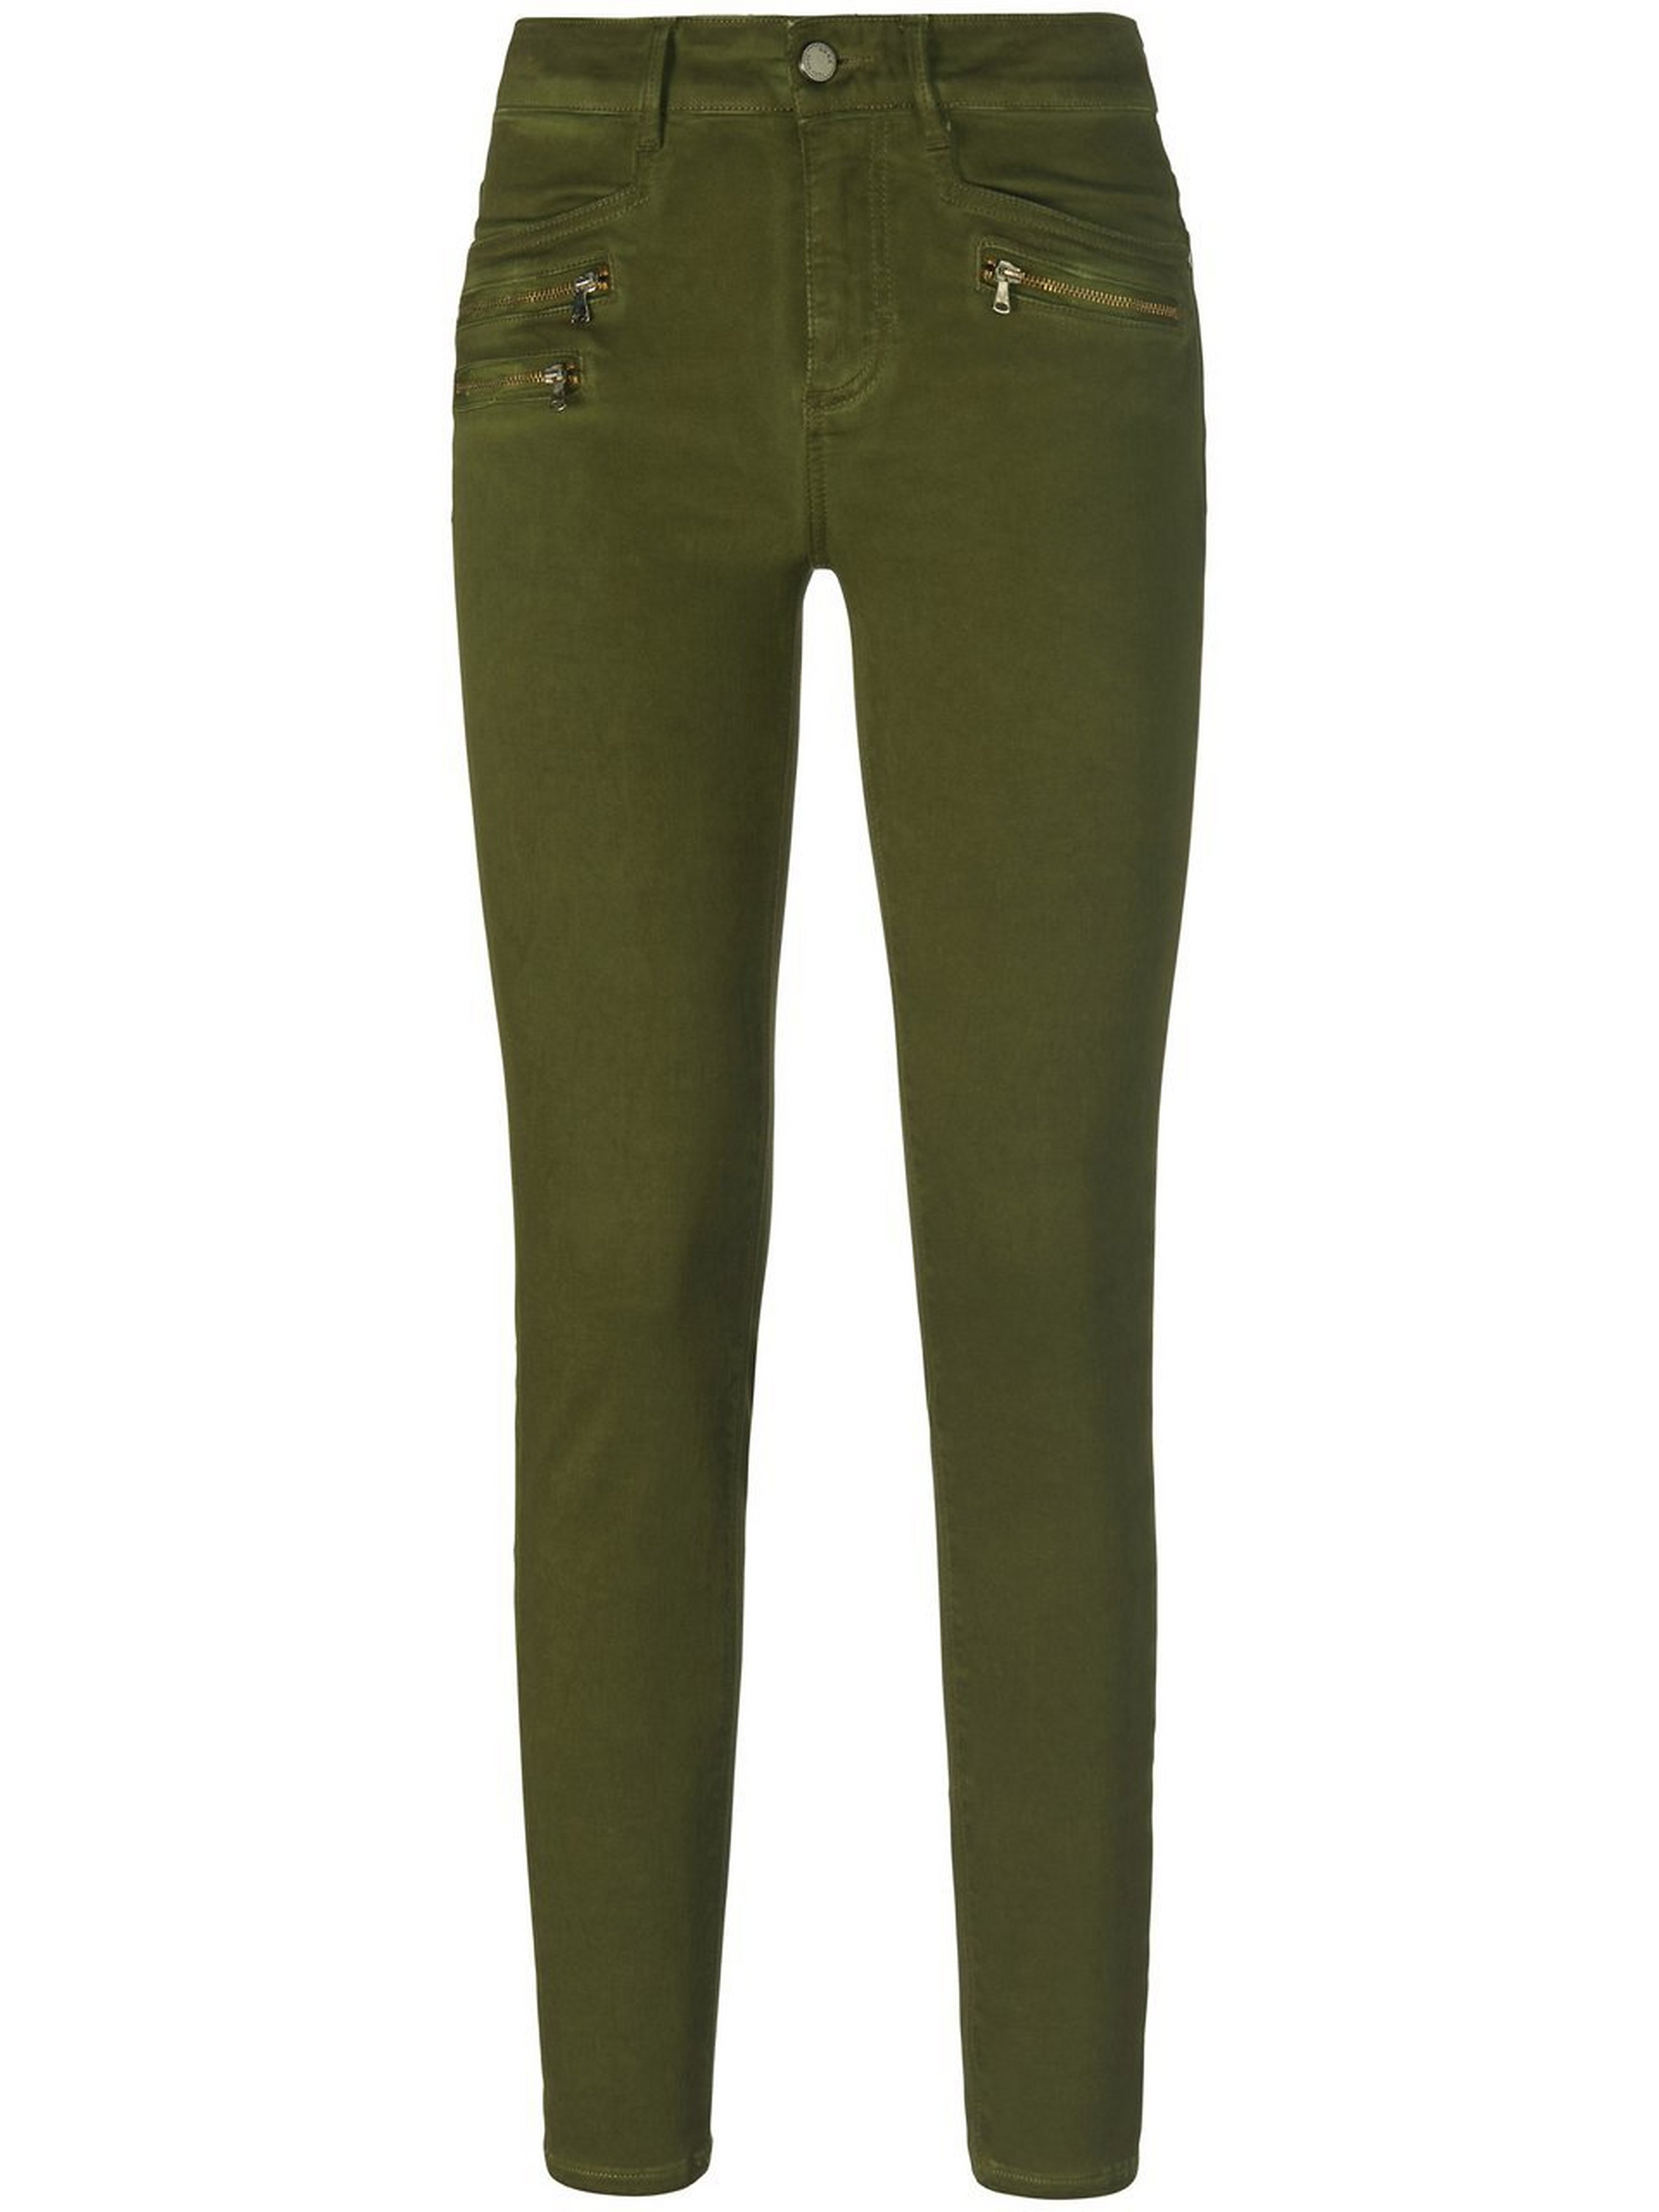 Skinny jeans model Ana Van Brax Feel Good groen